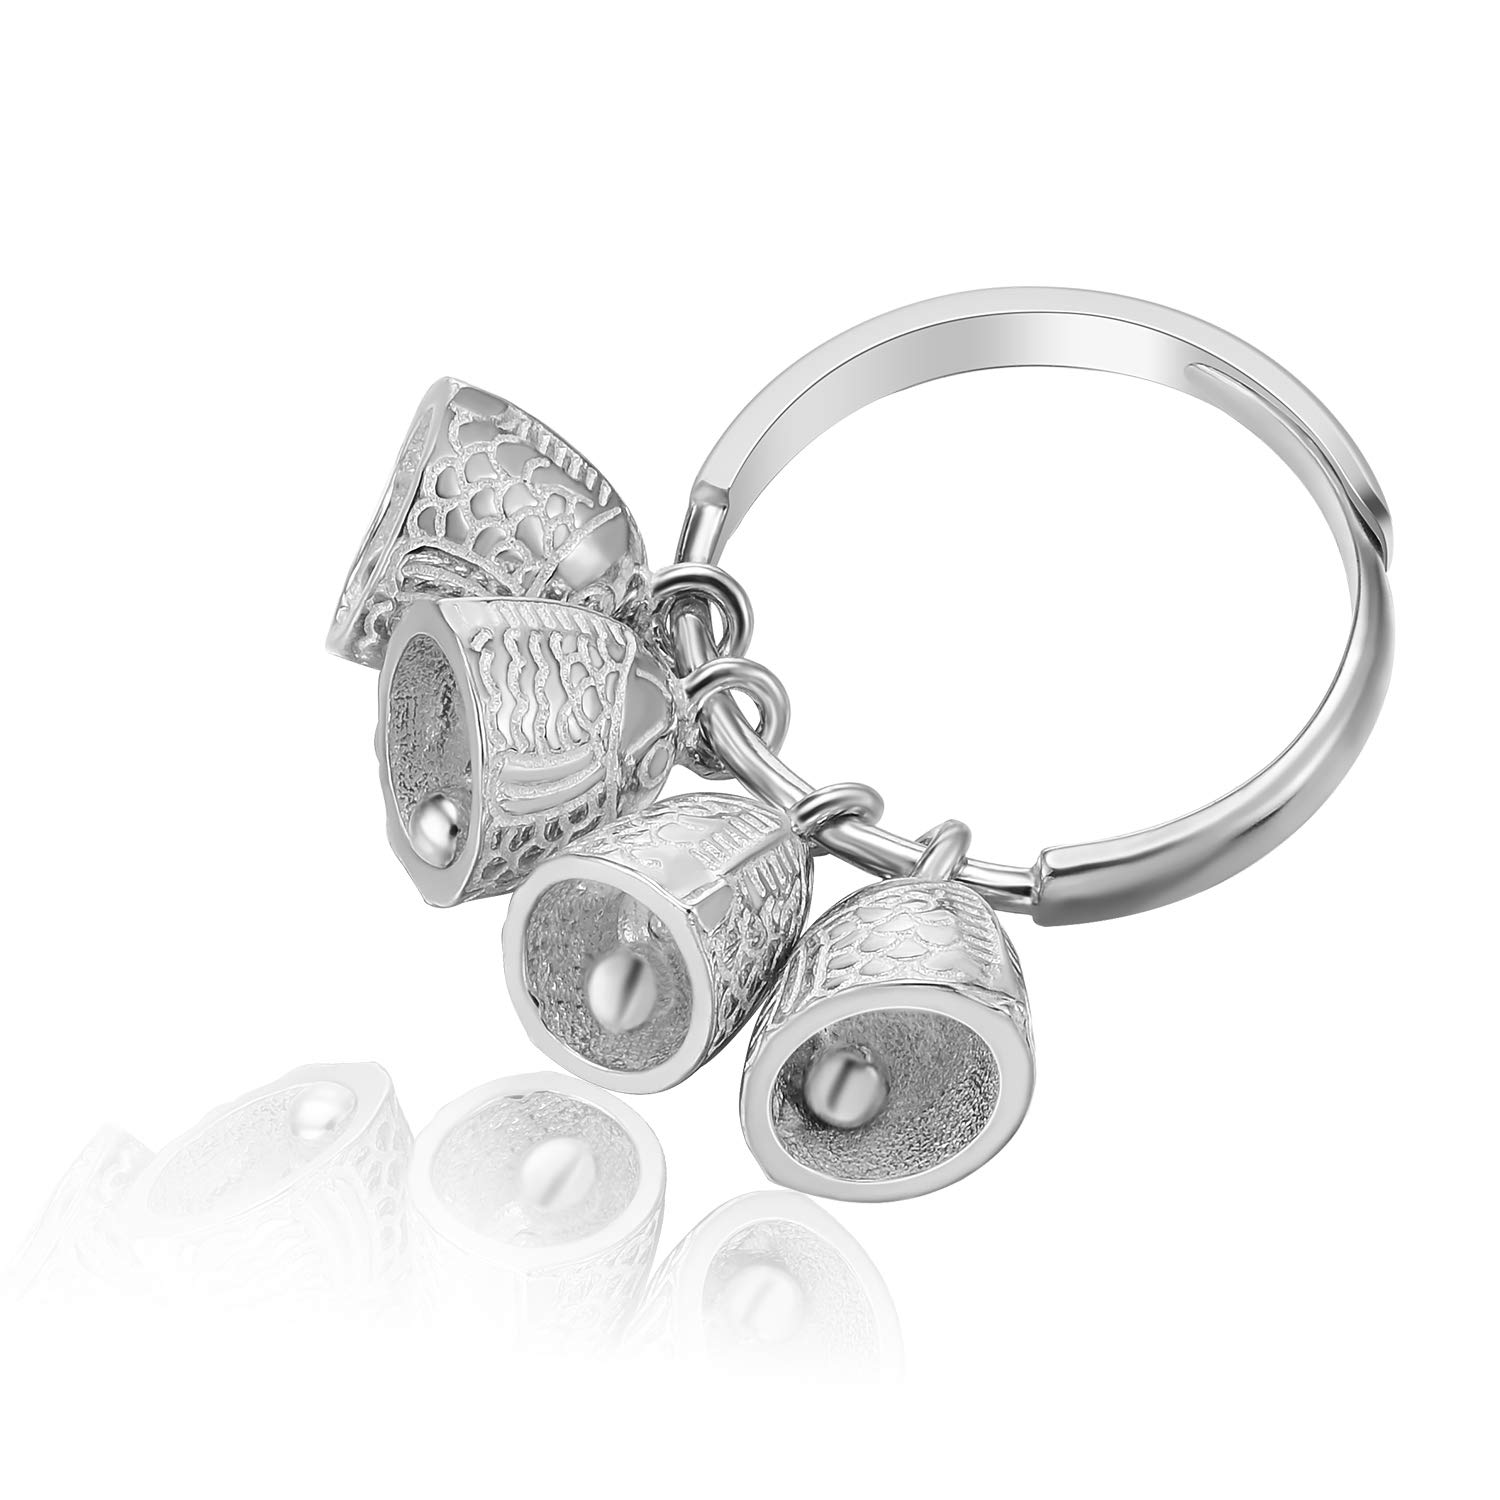 Lotus Fun S925 Sterling Silber Ring Ethnische Vintage Fish Bell Ring Natürlicher Kreativ Beliebt Handgemachter Einzigartiger Schmuck für Frauen und Mädchen